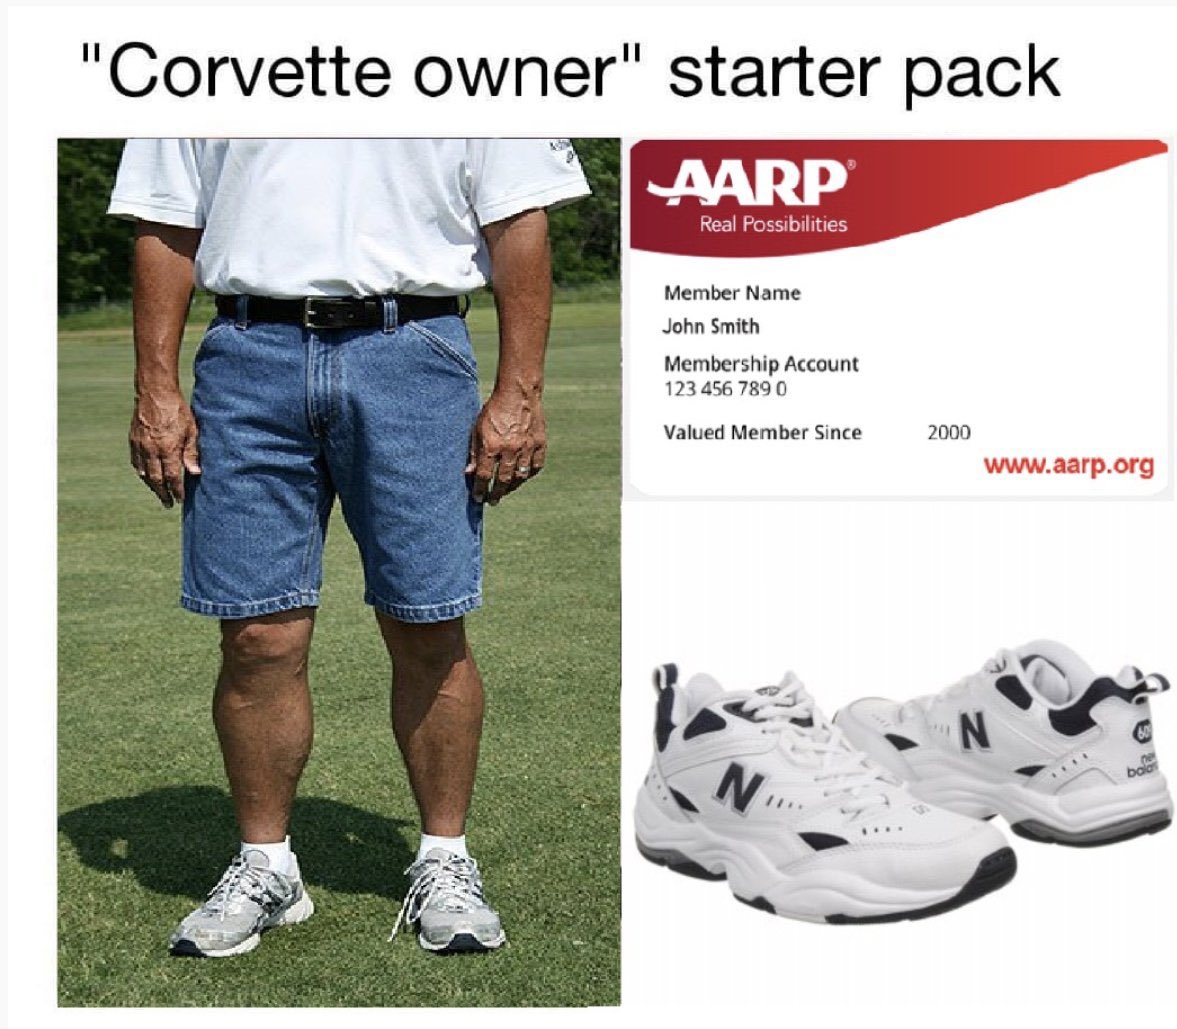 Corvette owner starter pack.jpg